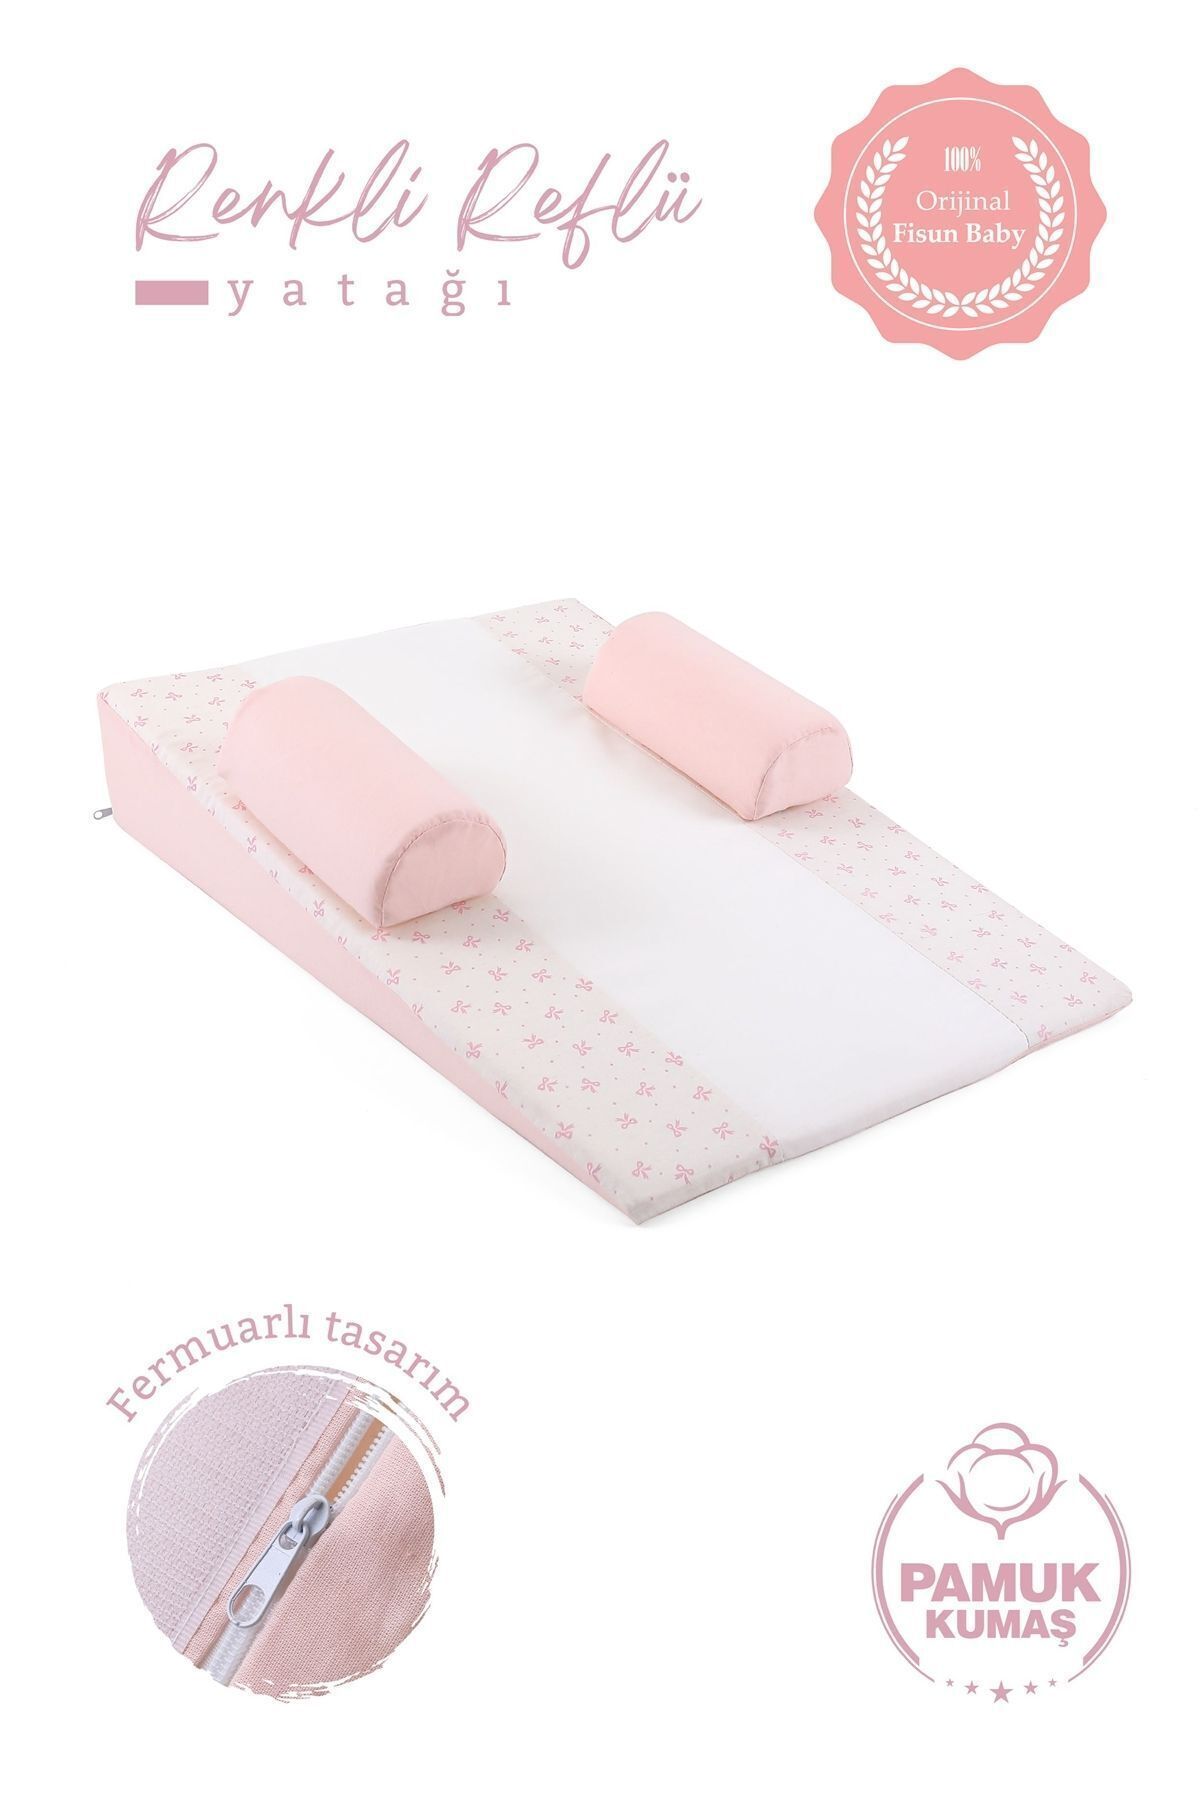 Fisun Baby Bebek Reflü Yatağı (PUDRA-FİYONK) Yıkanabilir Kılıflı, Ortopedik, Ana Kucağı FB.BRY.001